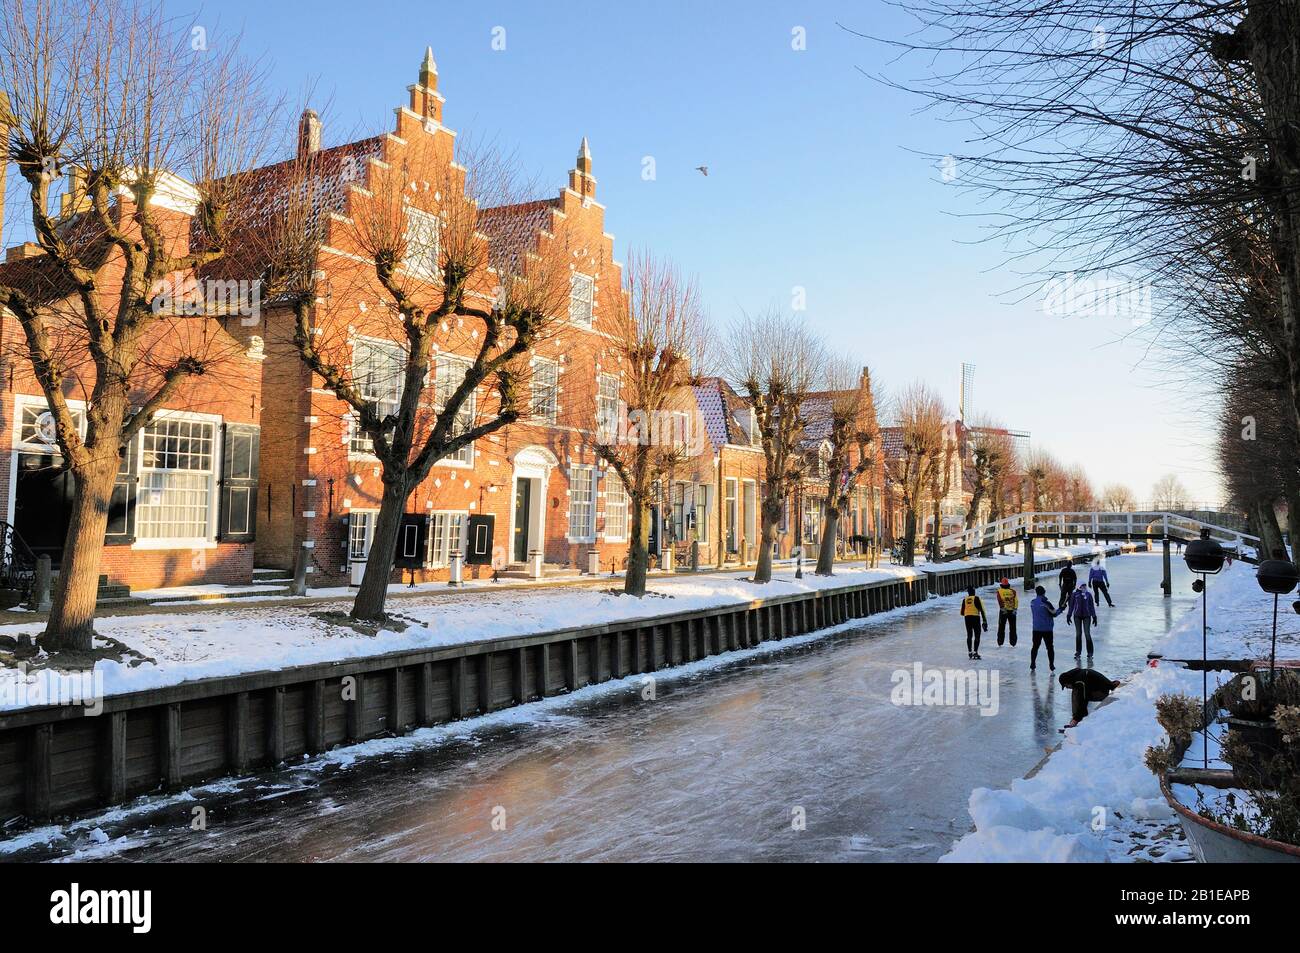 Village Sloten en hiver, Pays-Bas, Frise Banque D'Images